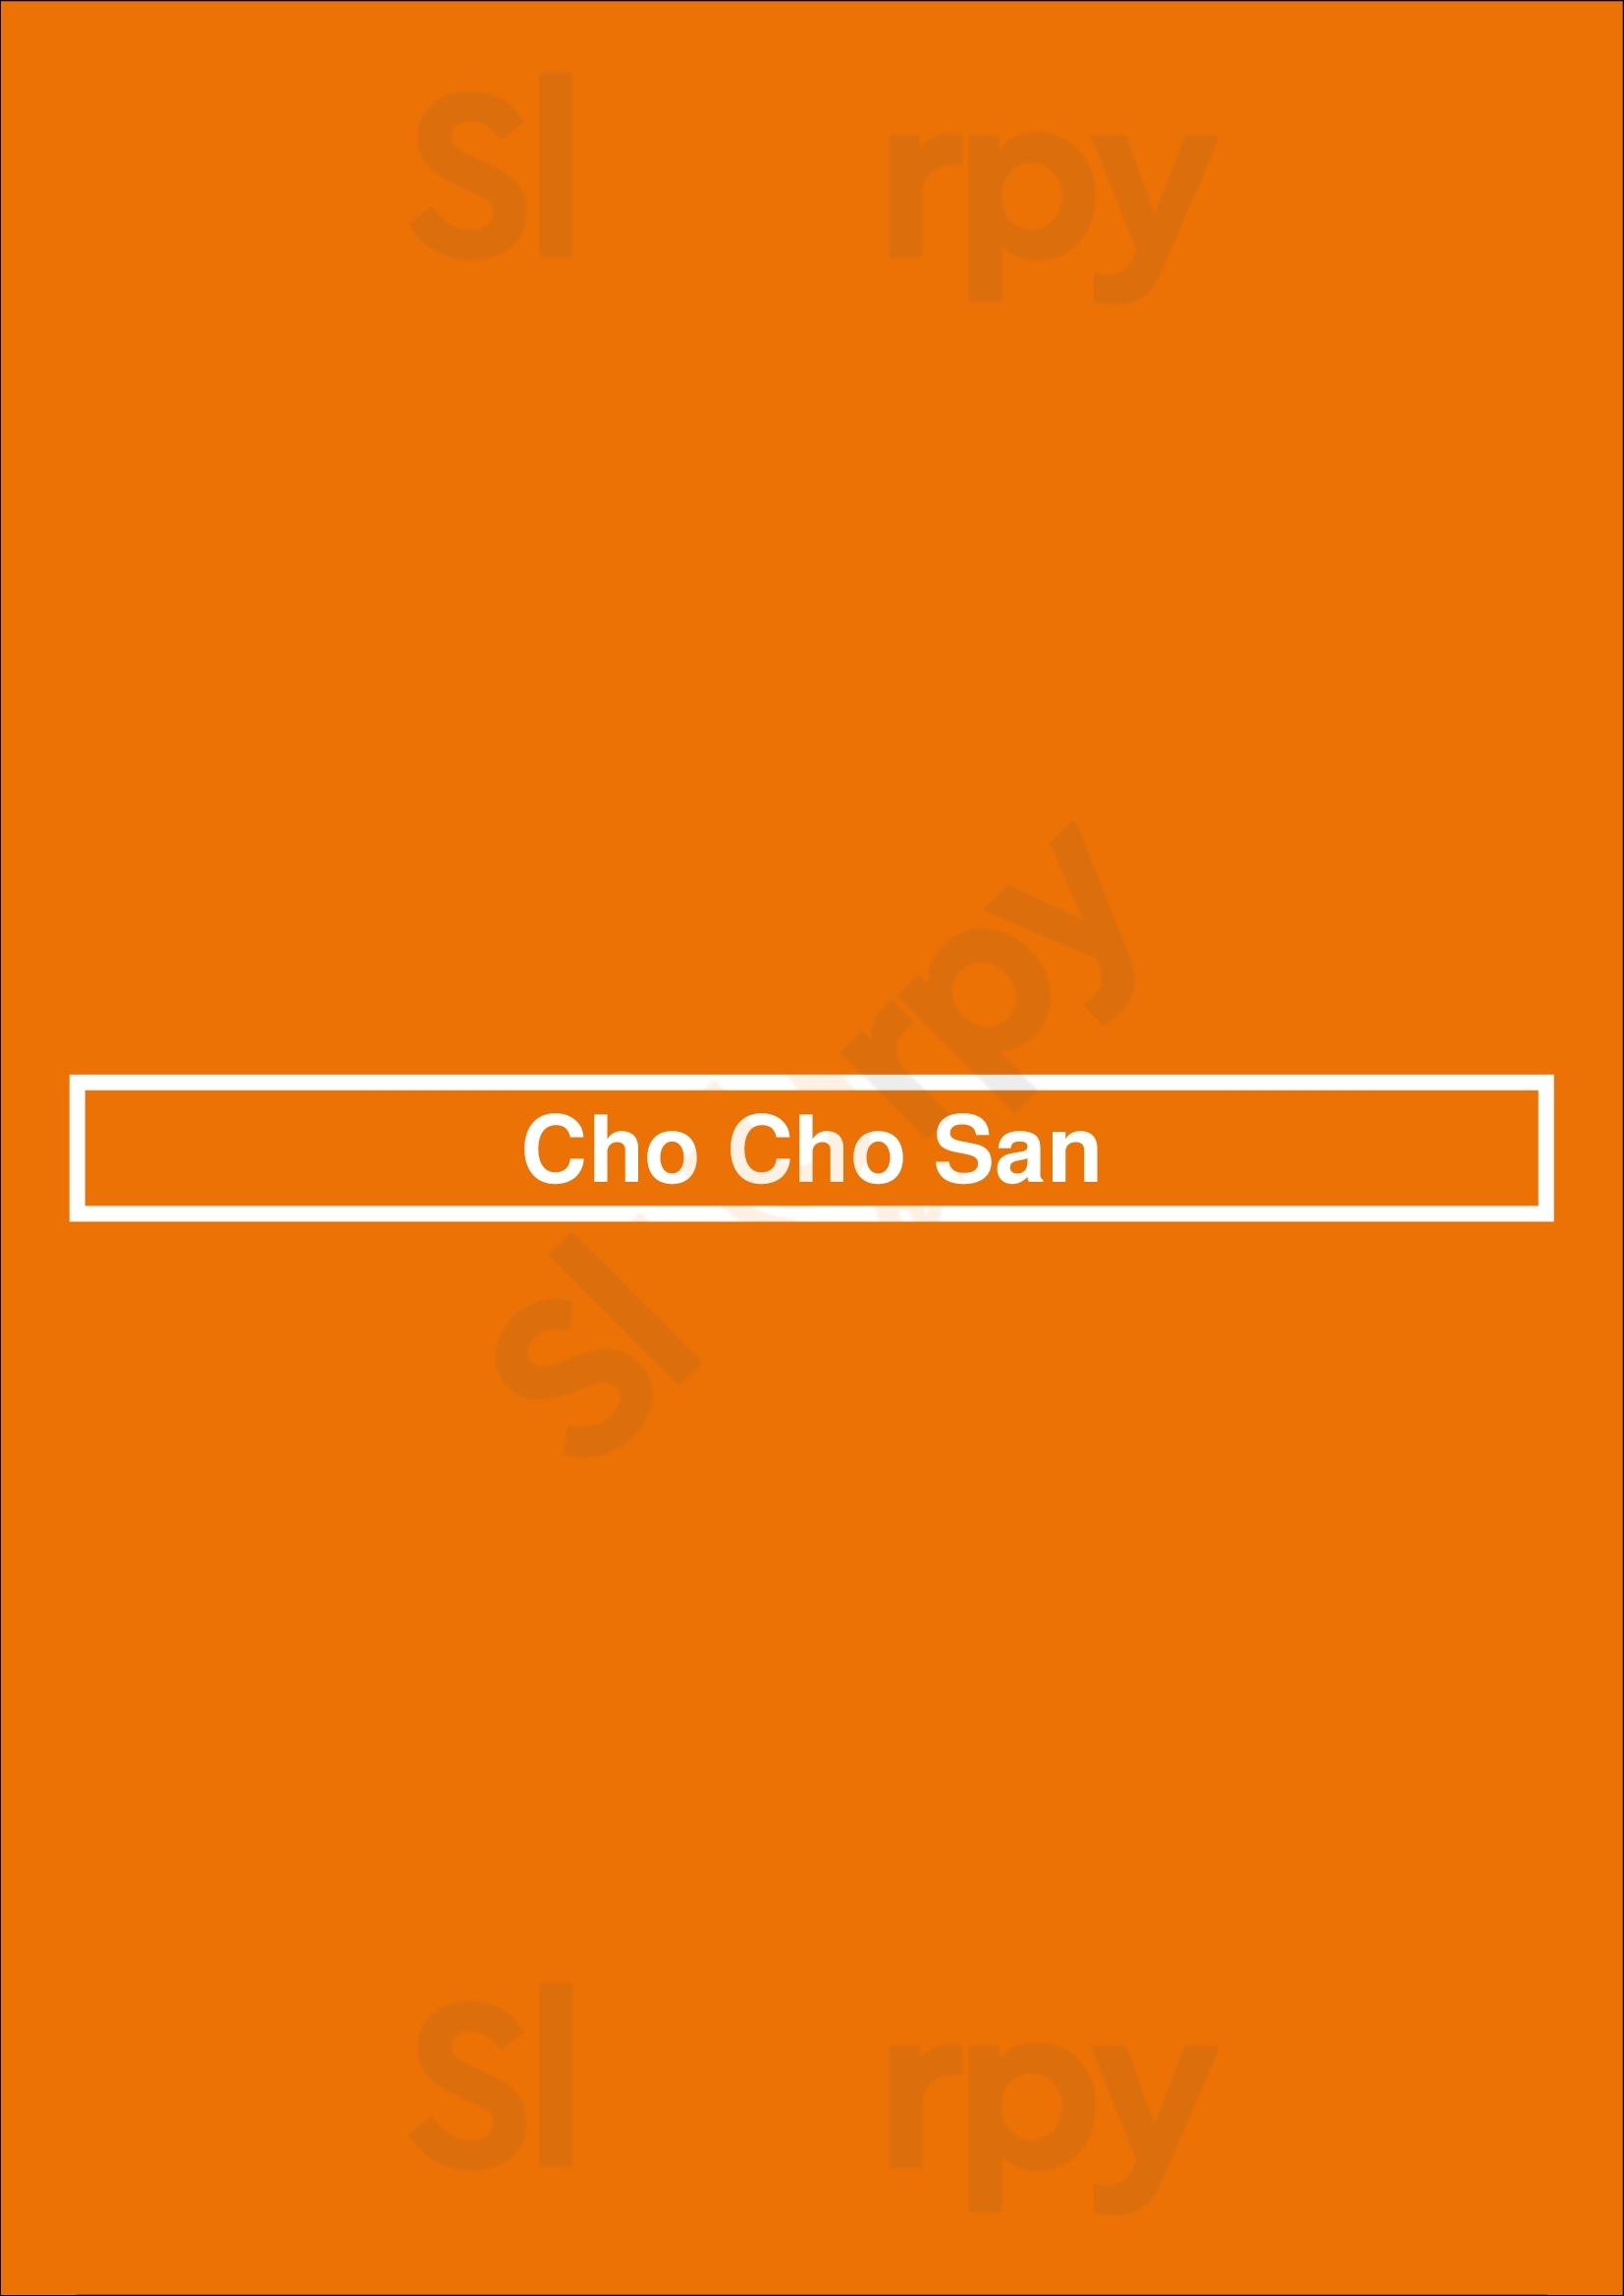 Cho Cho San Los Angeles Menu - 1